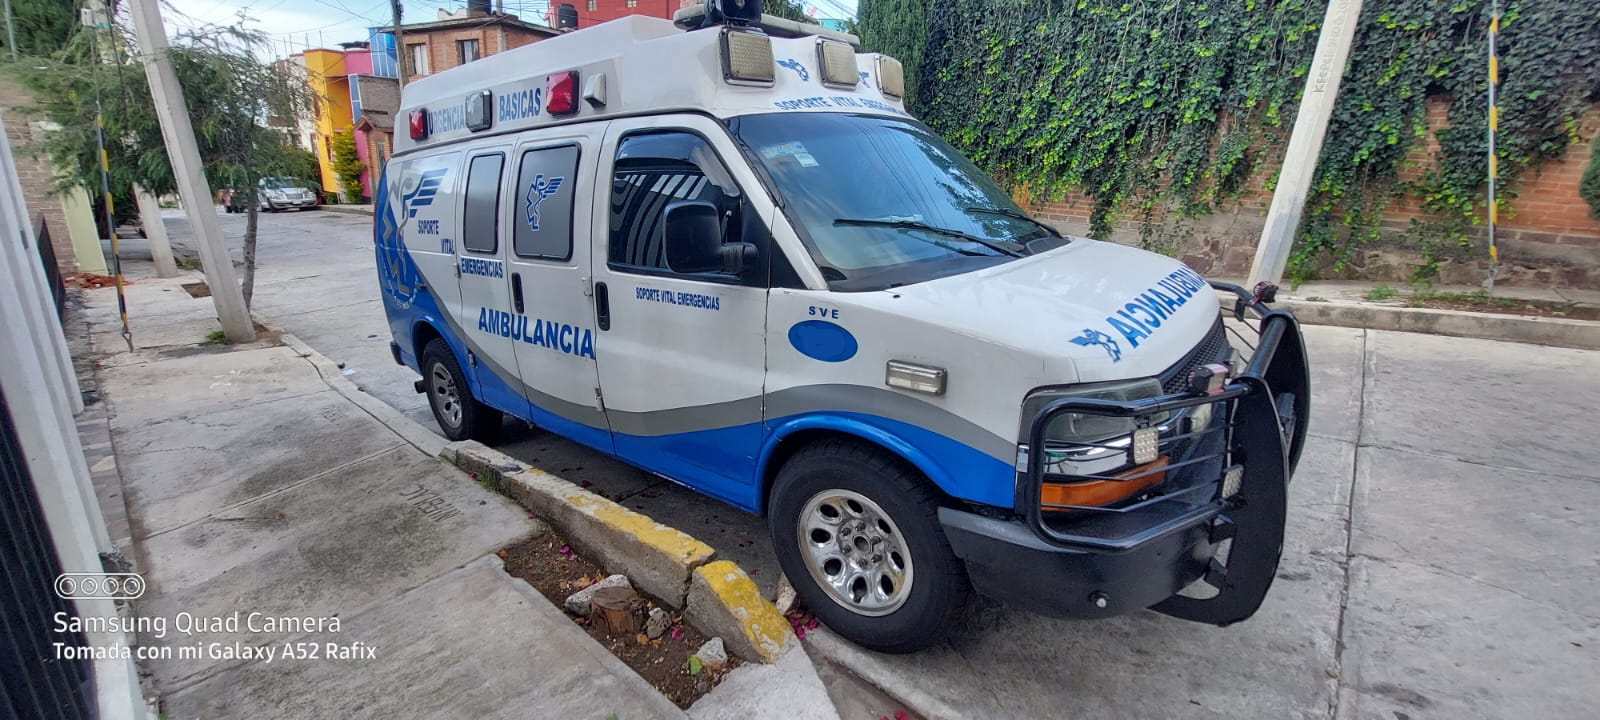 Soporte Vital Emergencias CDMX | Ambulancias 24/7 en la CDMX : Servicio de ambulancia en la Ciudad de México | Soporte Vital Emergencias. Ambulancias las 24 horas en la Ciudad de MÃ©xico y Estado de MÃ©xico : https://www.ambulancias24-7.com/p/Nosotros/